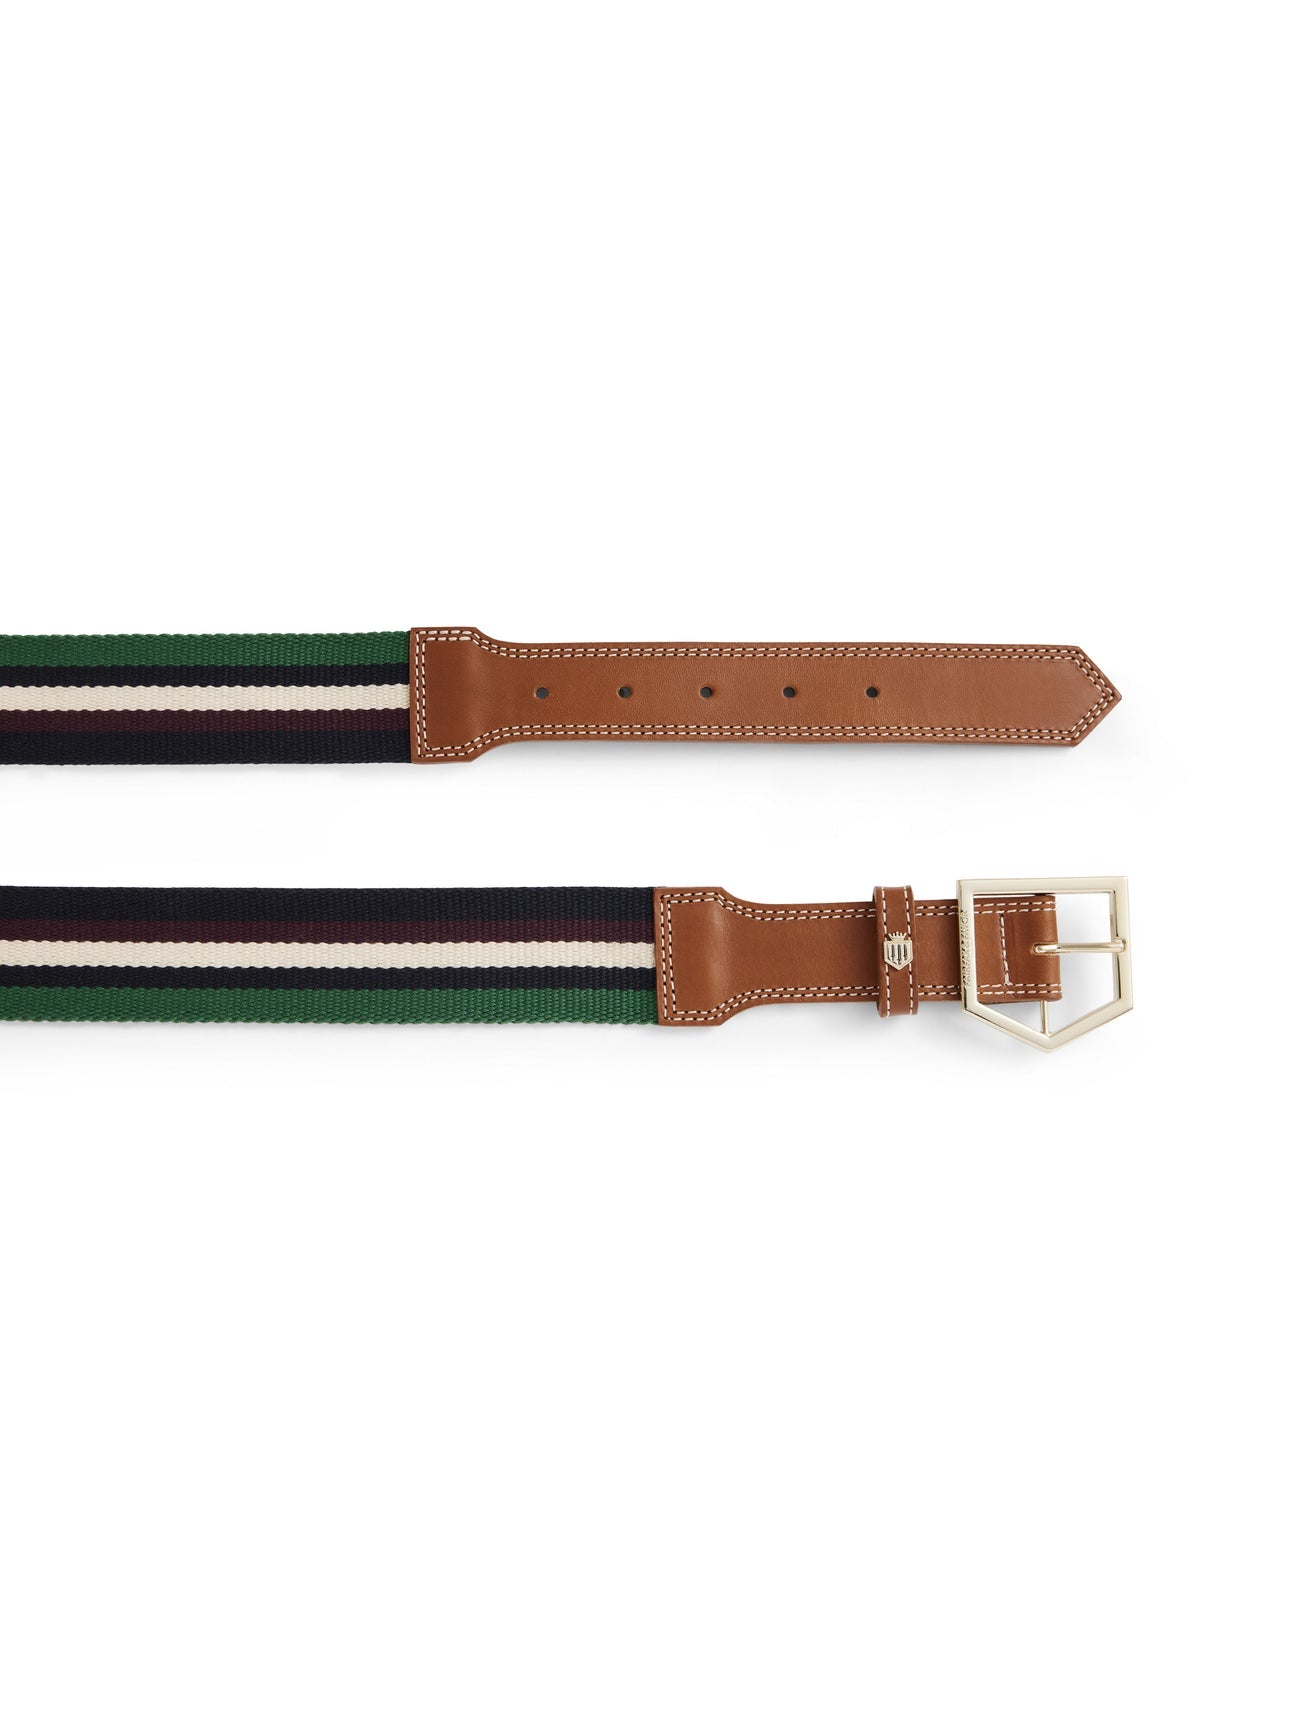 Boston Women’s Belt - Tan Leather & Striped Webbing